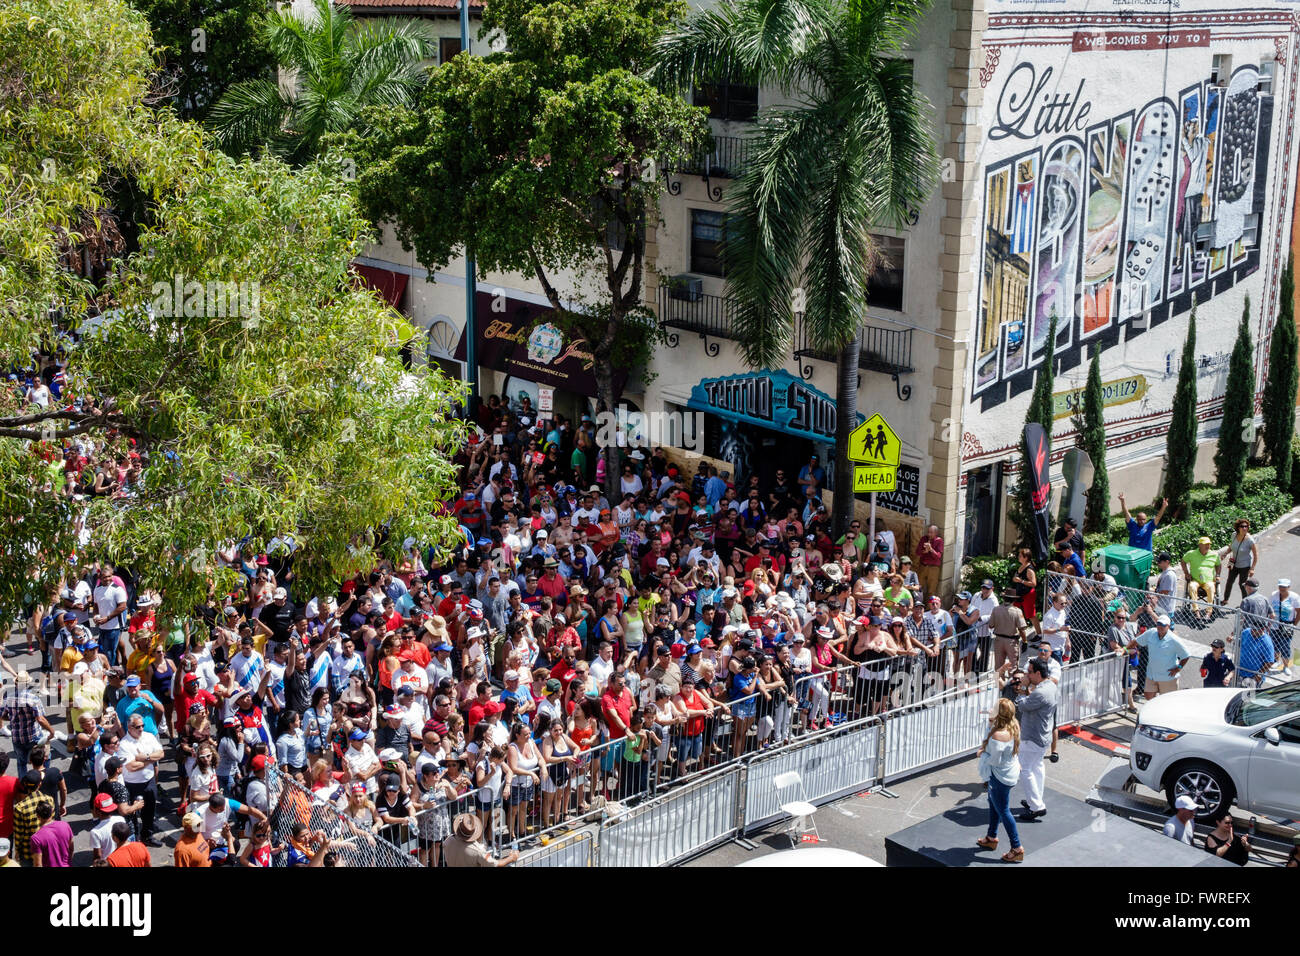 Miami Florida,Little Havana,Calle Ocho,festival de rue annuel,événement,hispanique latin Latino ethno immigrants minorités ethniques,foule,public,gratuit con Banque D'Images